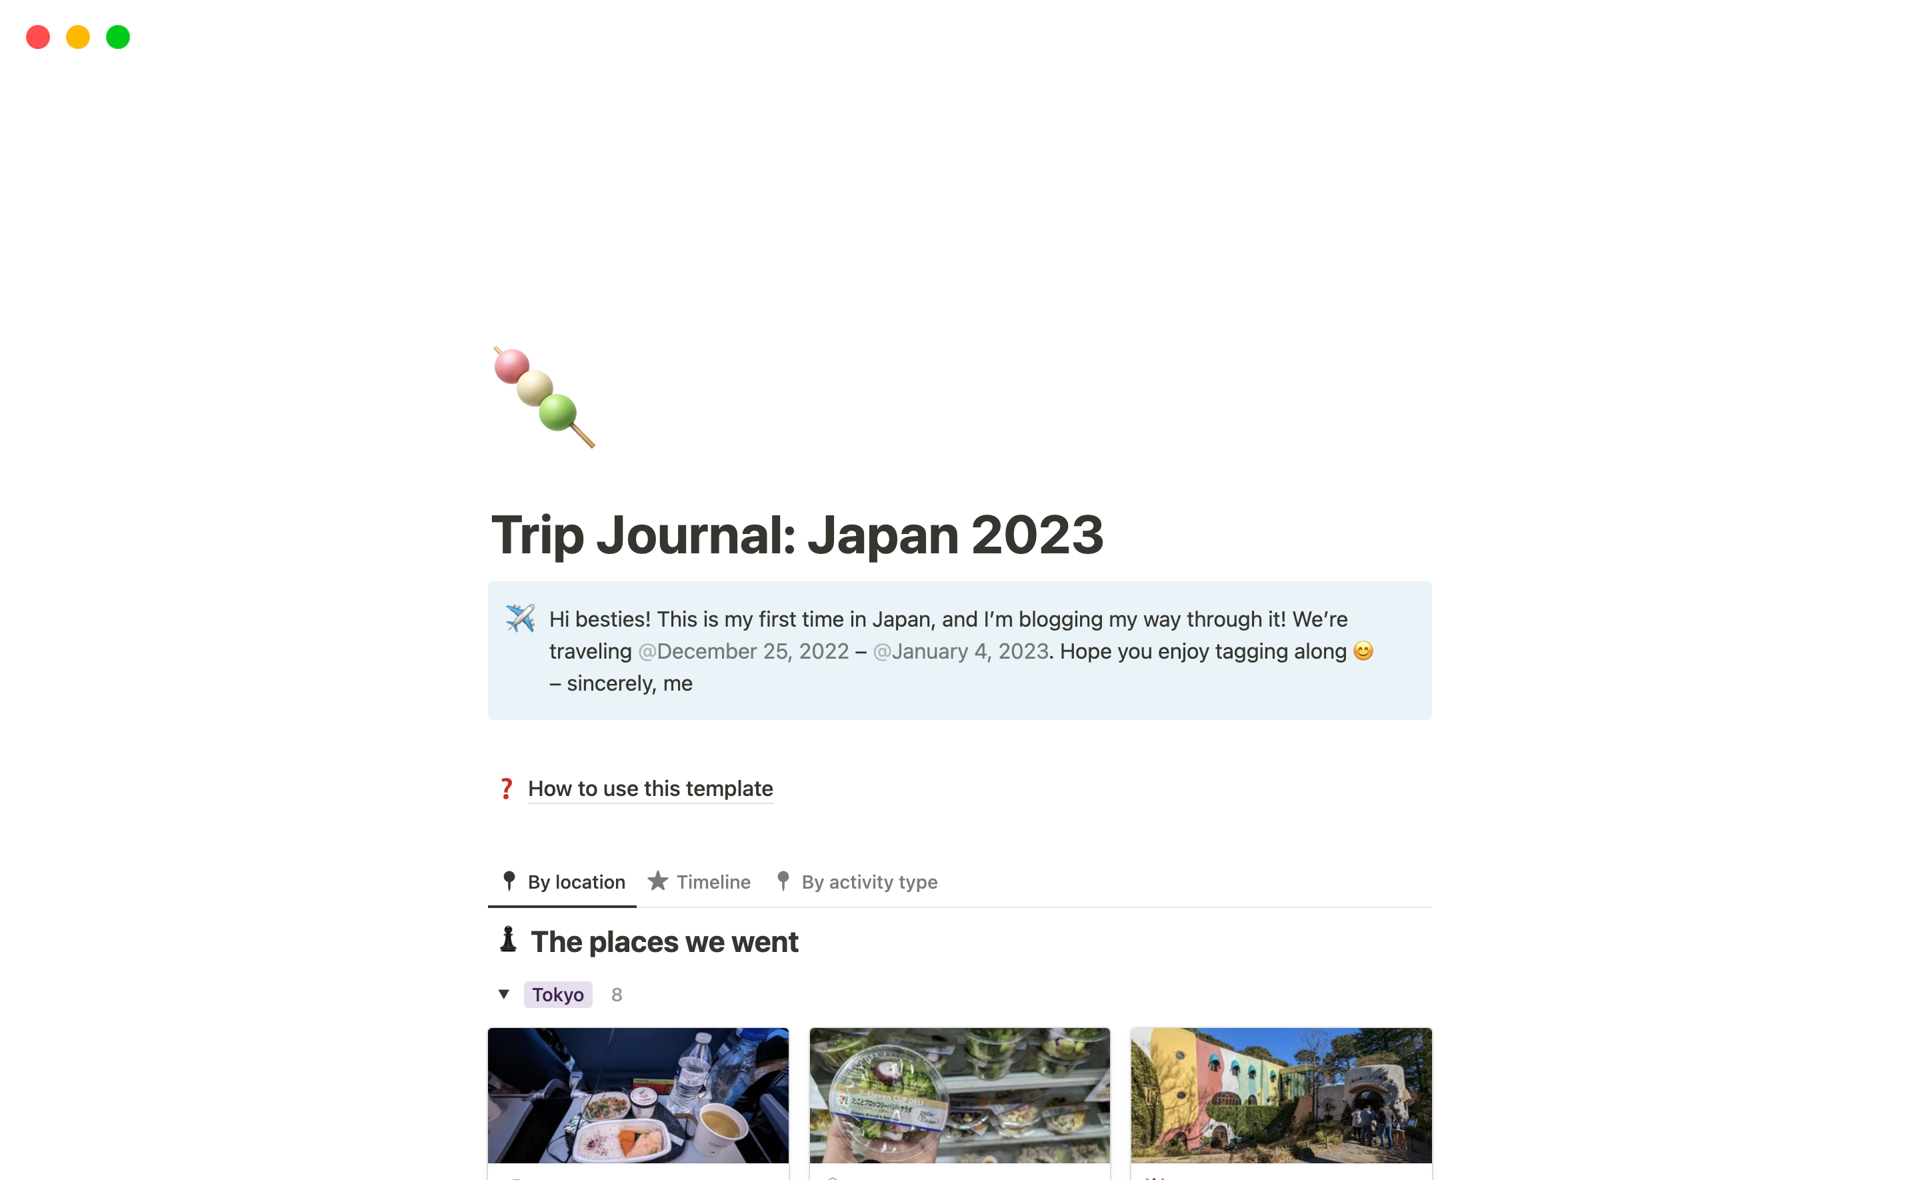 Aperçu du modèle de Trip Journal